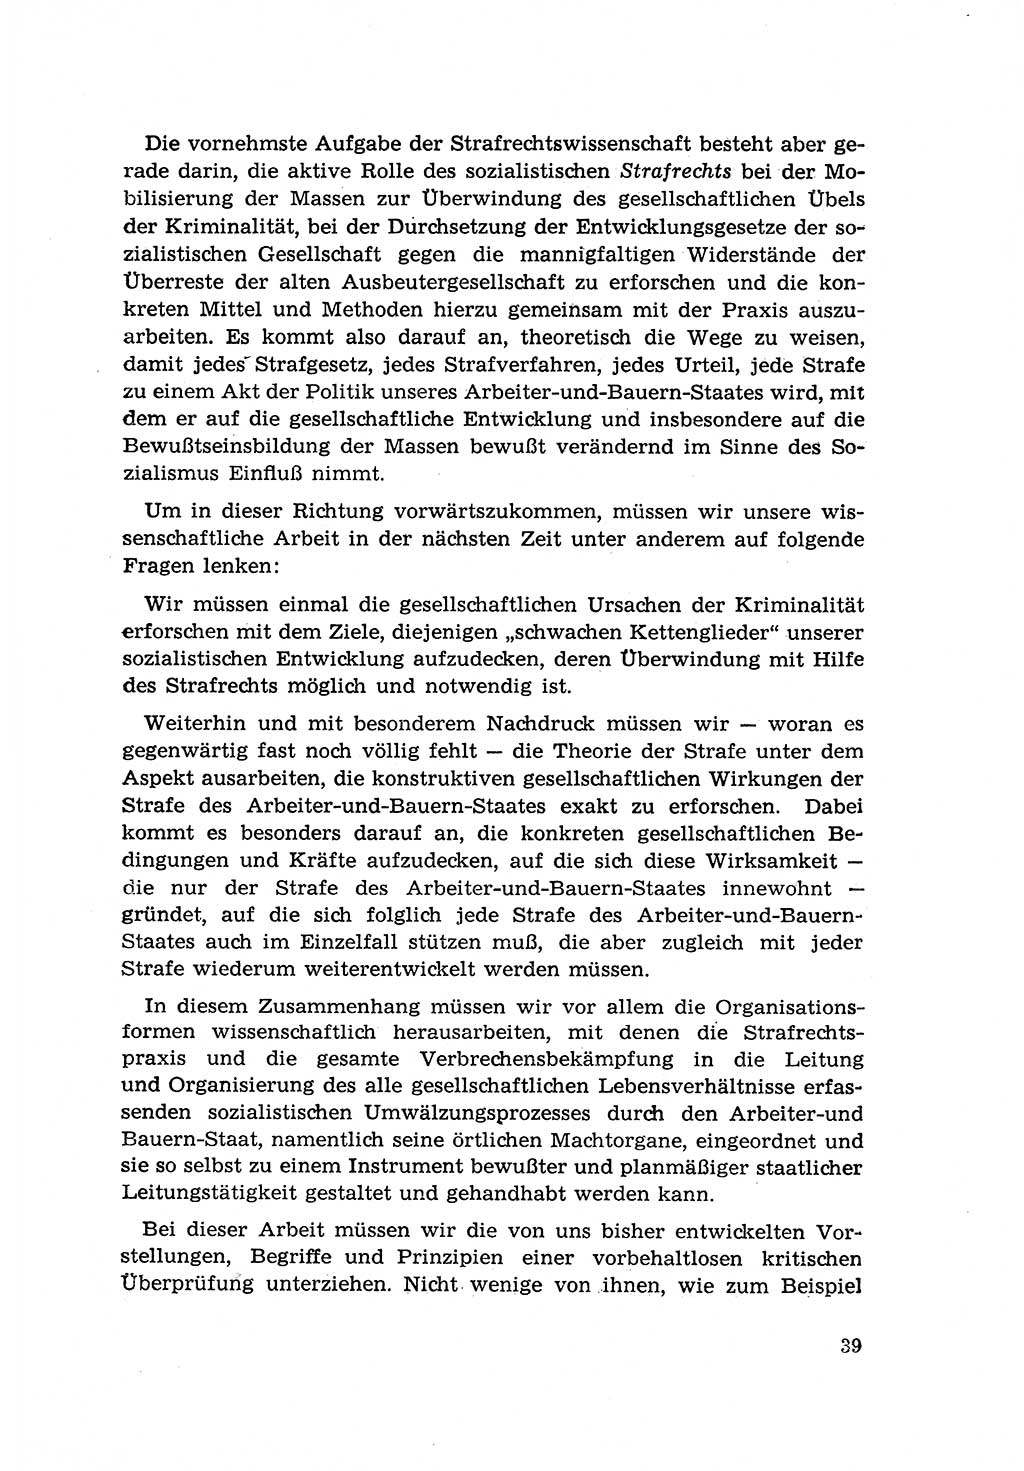 Zur Entwicklung des sozialistischen Strafrechts der Deutschen Demokratischen Republik (DDR) 1960, Seite 39 (Entw. soz. Strafr. DDR 1960, S. 39)